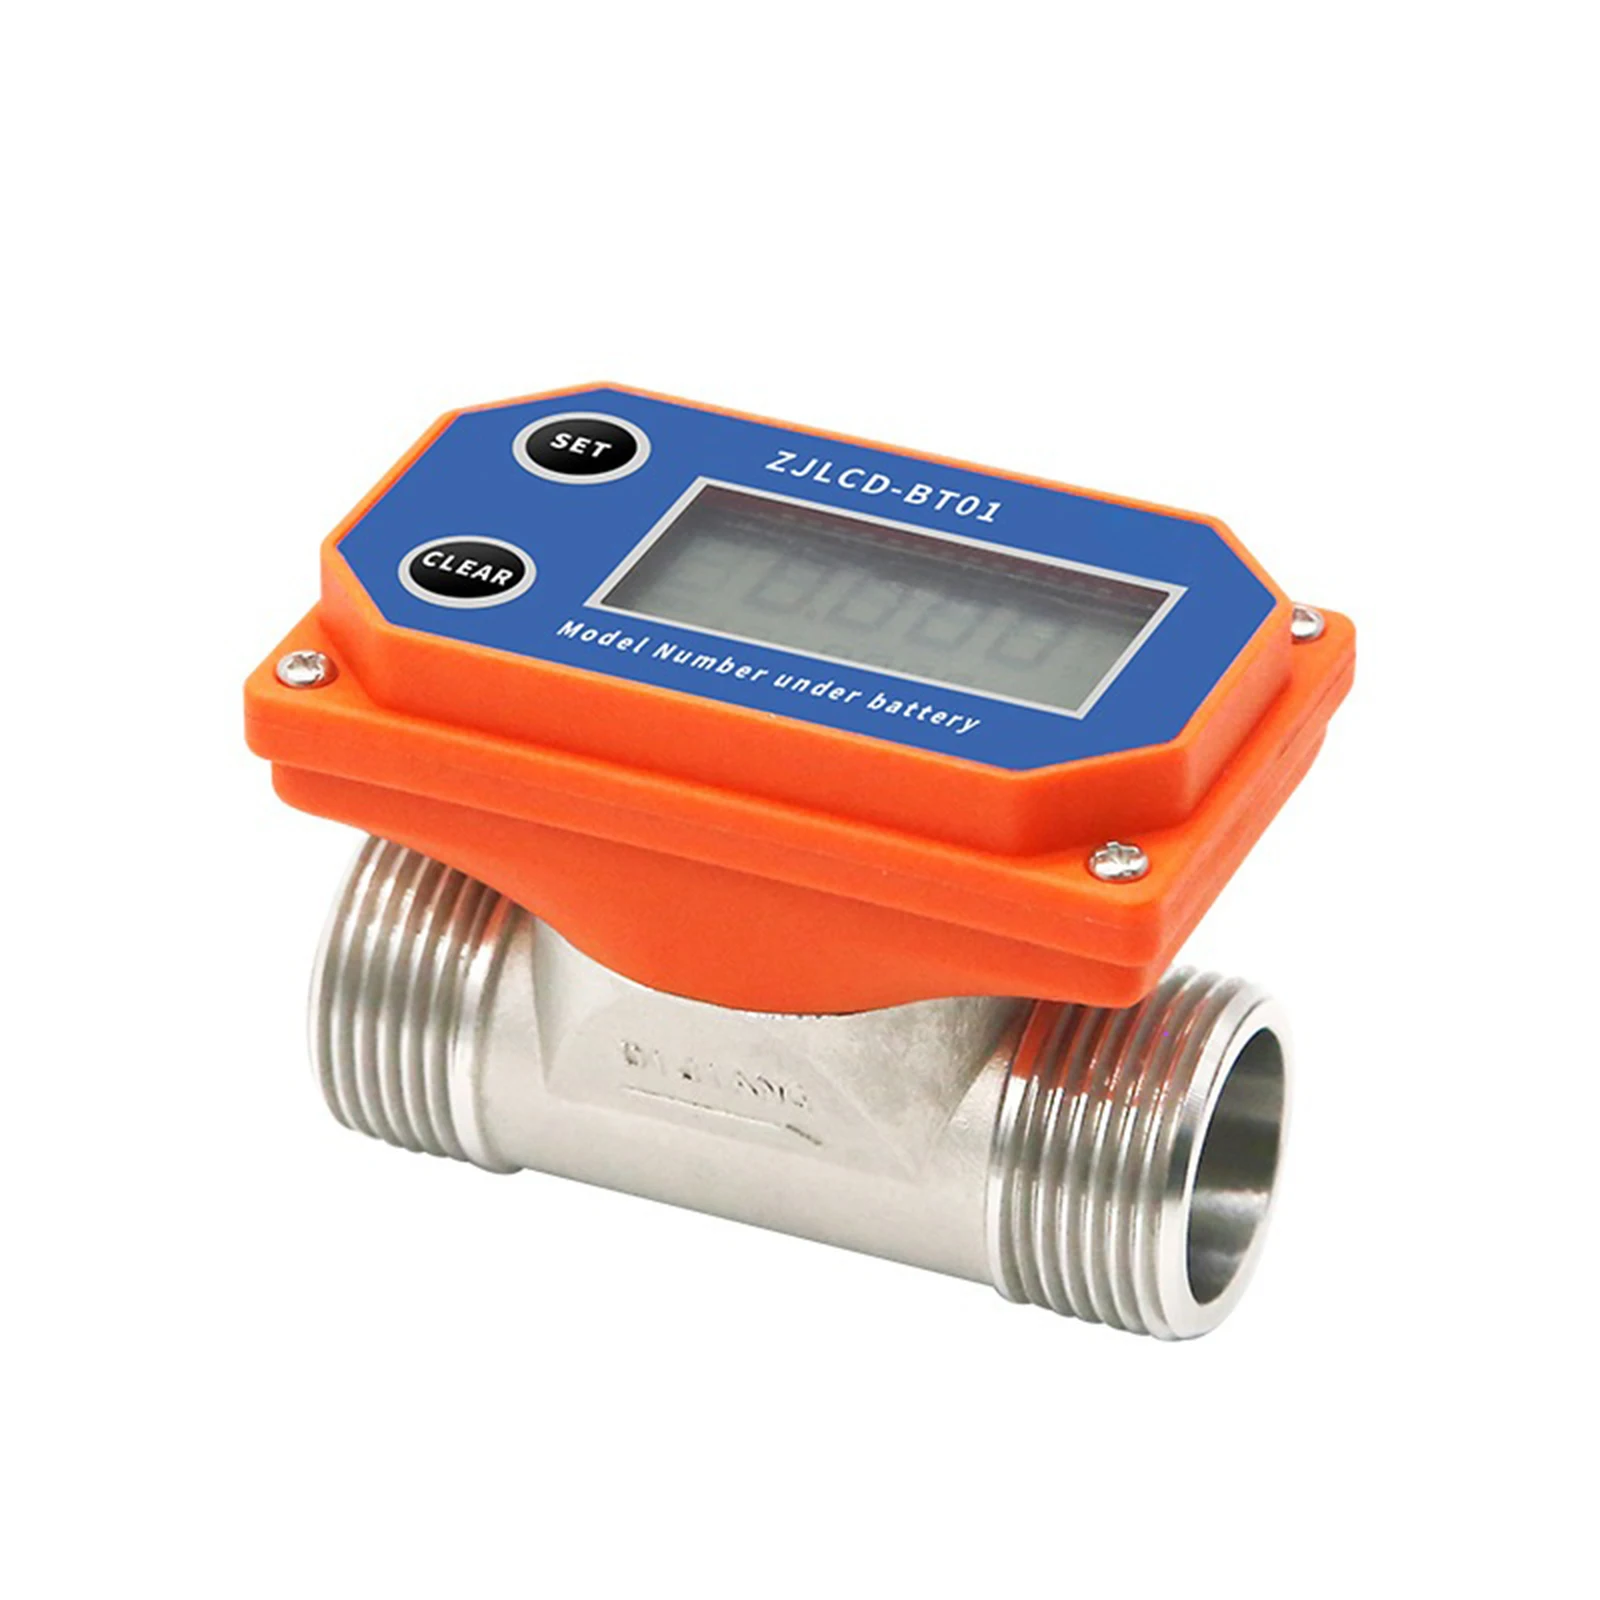 

DN25 Water Flowmeter Digital Display Flow Sensor Acid Alkali Resistance Flow Meter for Farmland Irrigation